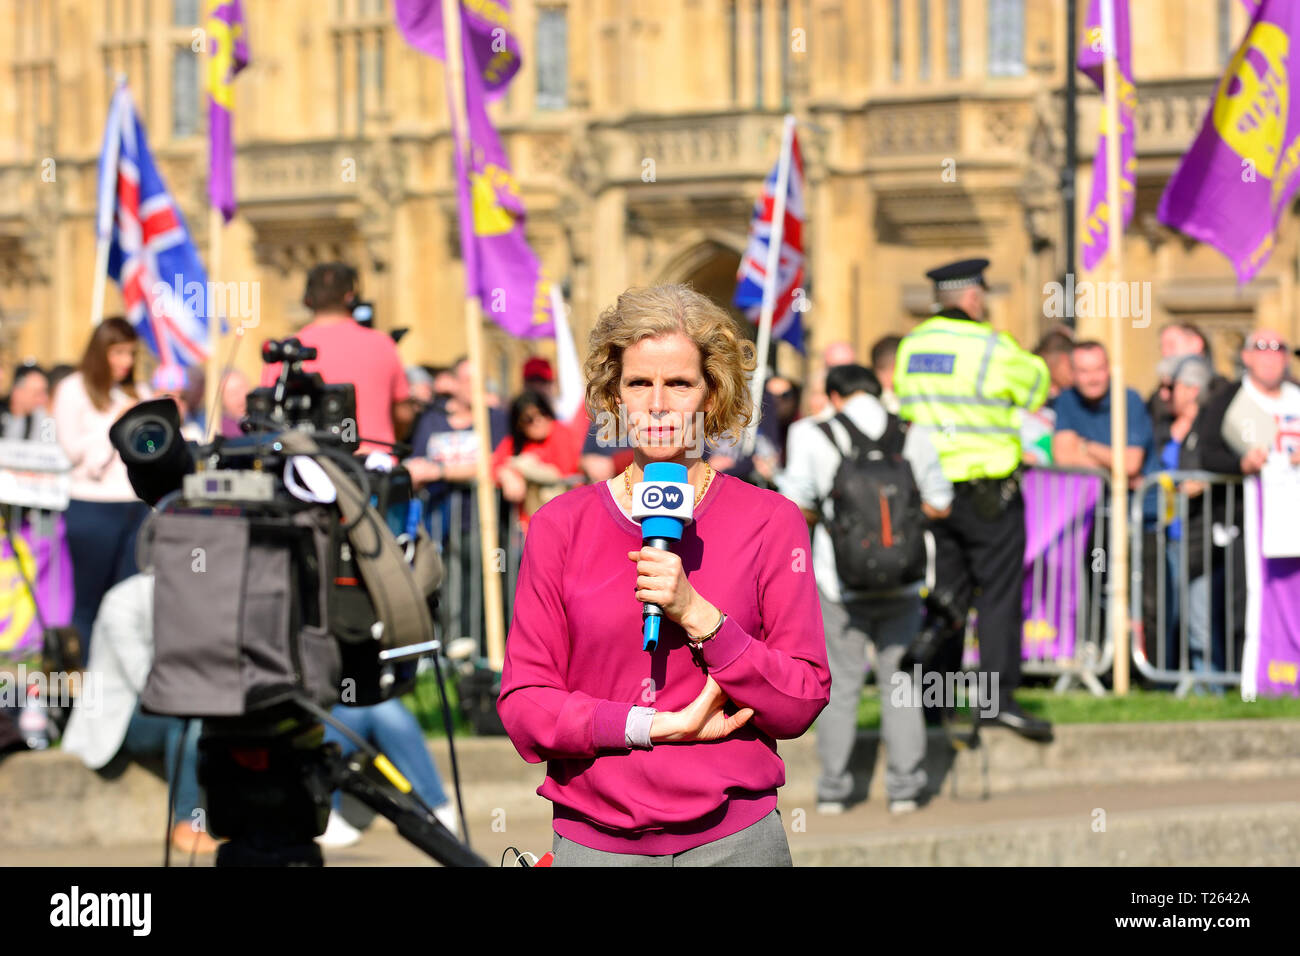 Birgit Maass - Deutsche Welle UK correspondent - reporting on Brexit from College Green, Westminster, UK. 29 March 2019 Stock Photo